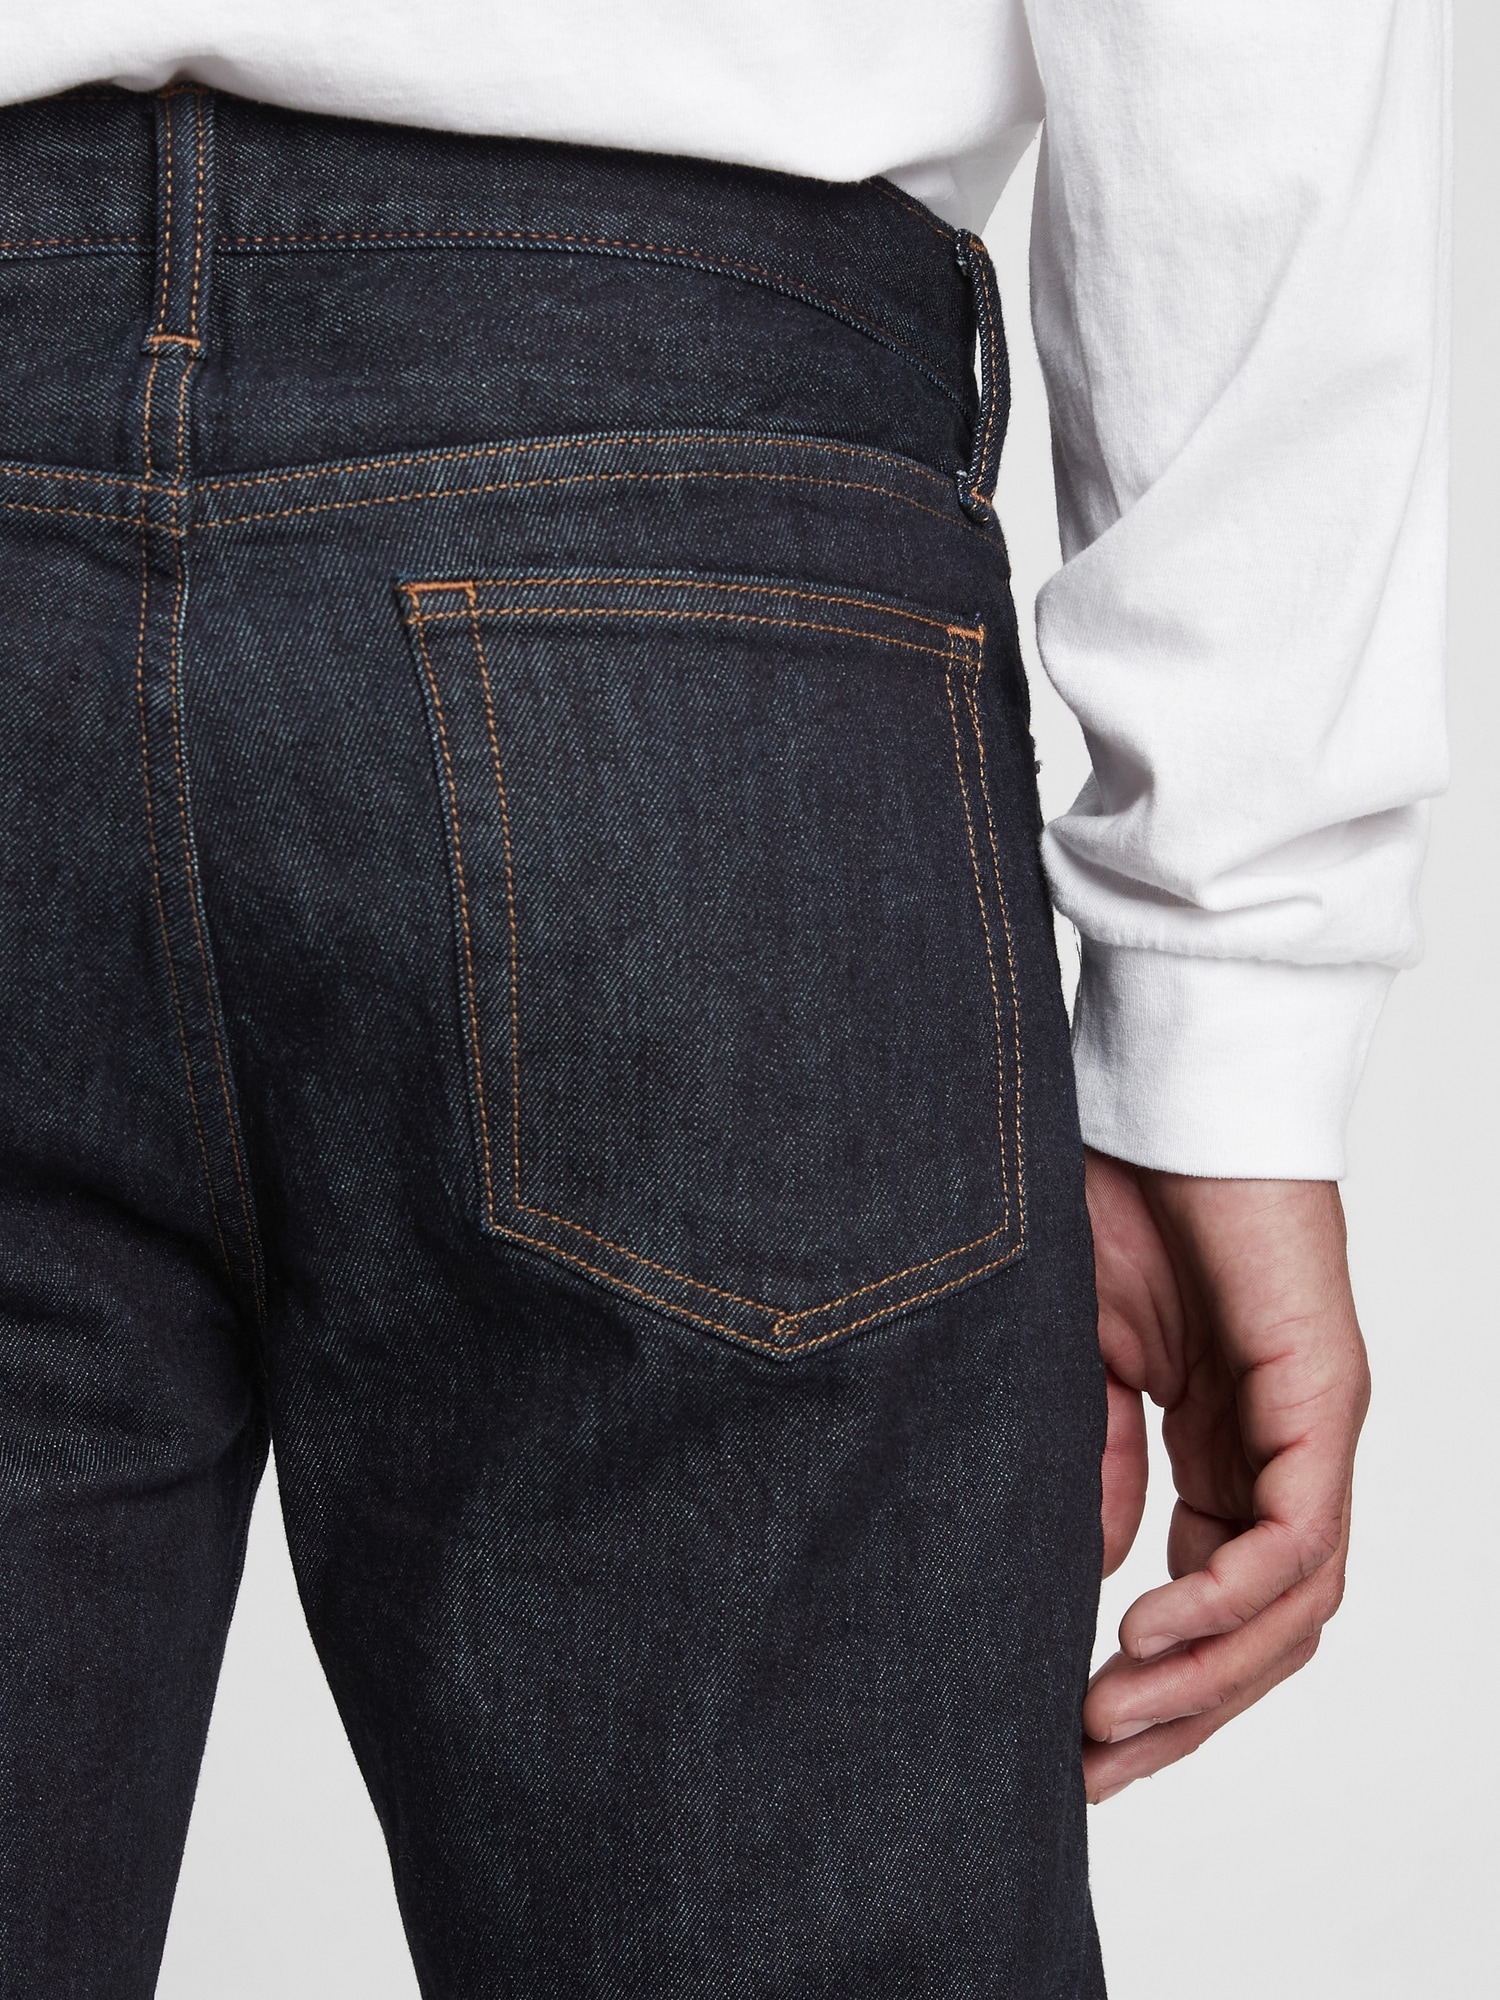 GAP Mens Soft Wear Slim Fit Jeans, Dark Grey 007, 31W x 32L US